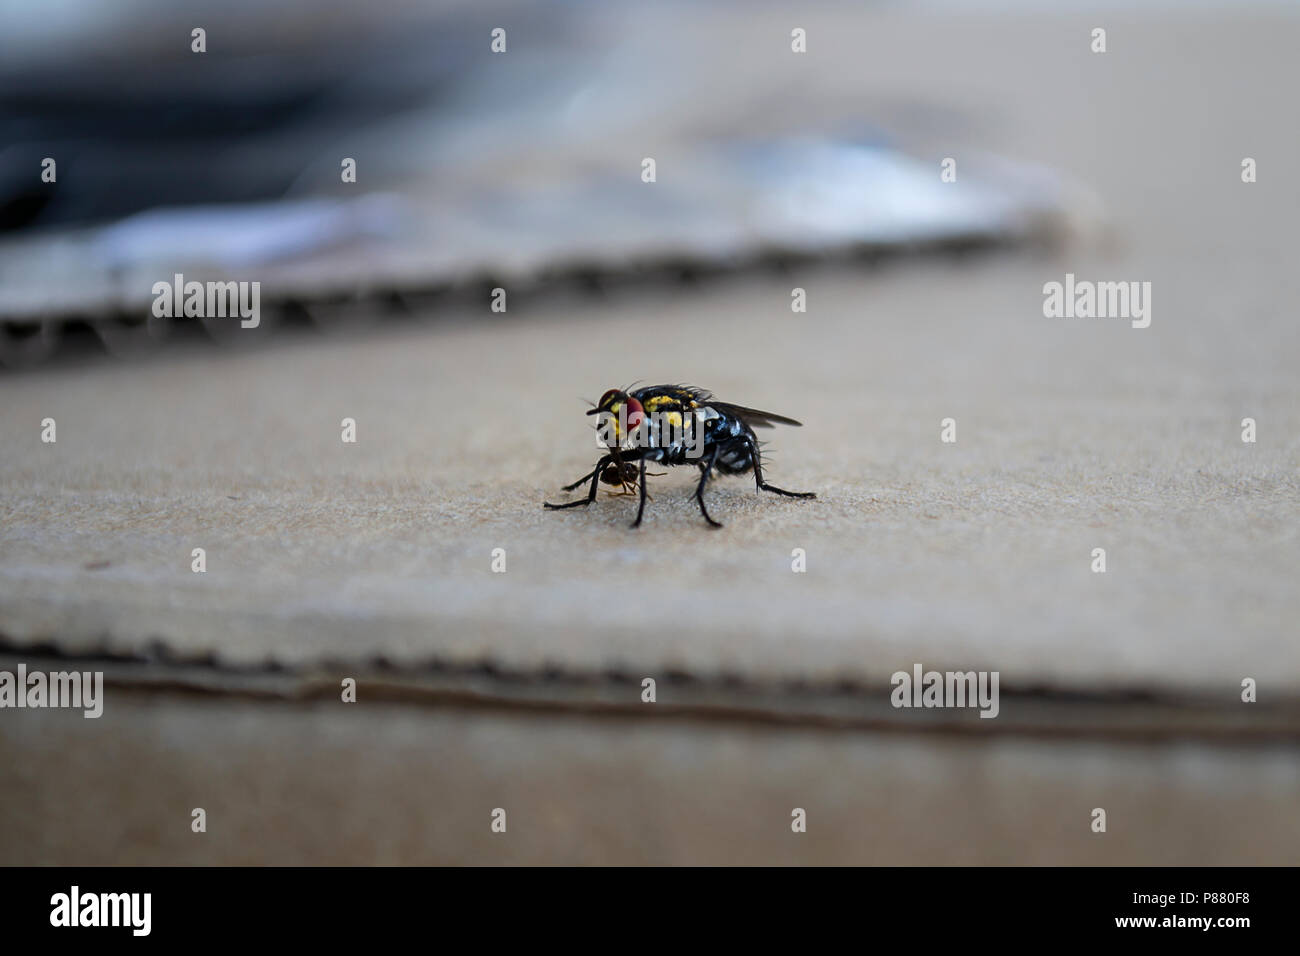 Fliegen Holding eine Ameise auf einem Tisch. Zwei Insekten. Wild life. Stockfoto